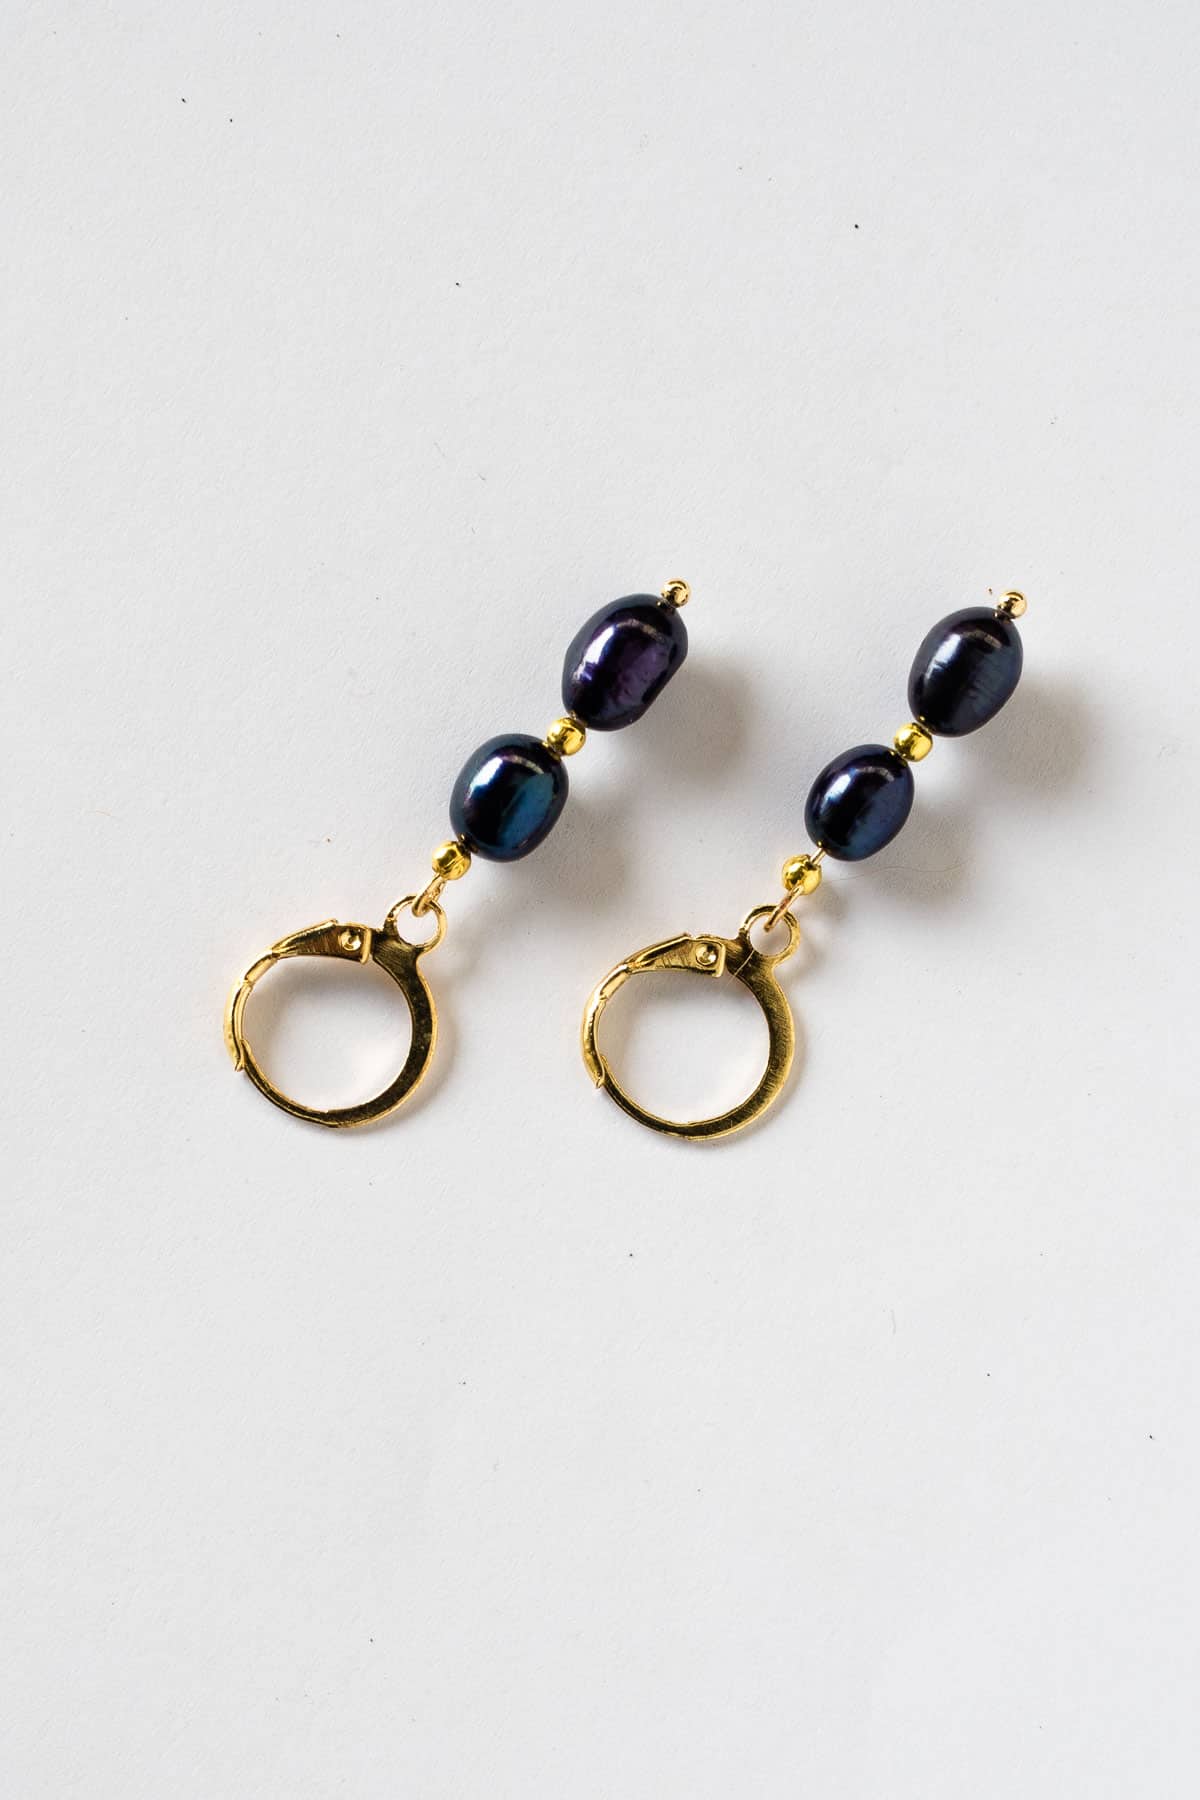 A pair of blue pearl earrings in gold lever back hoop.